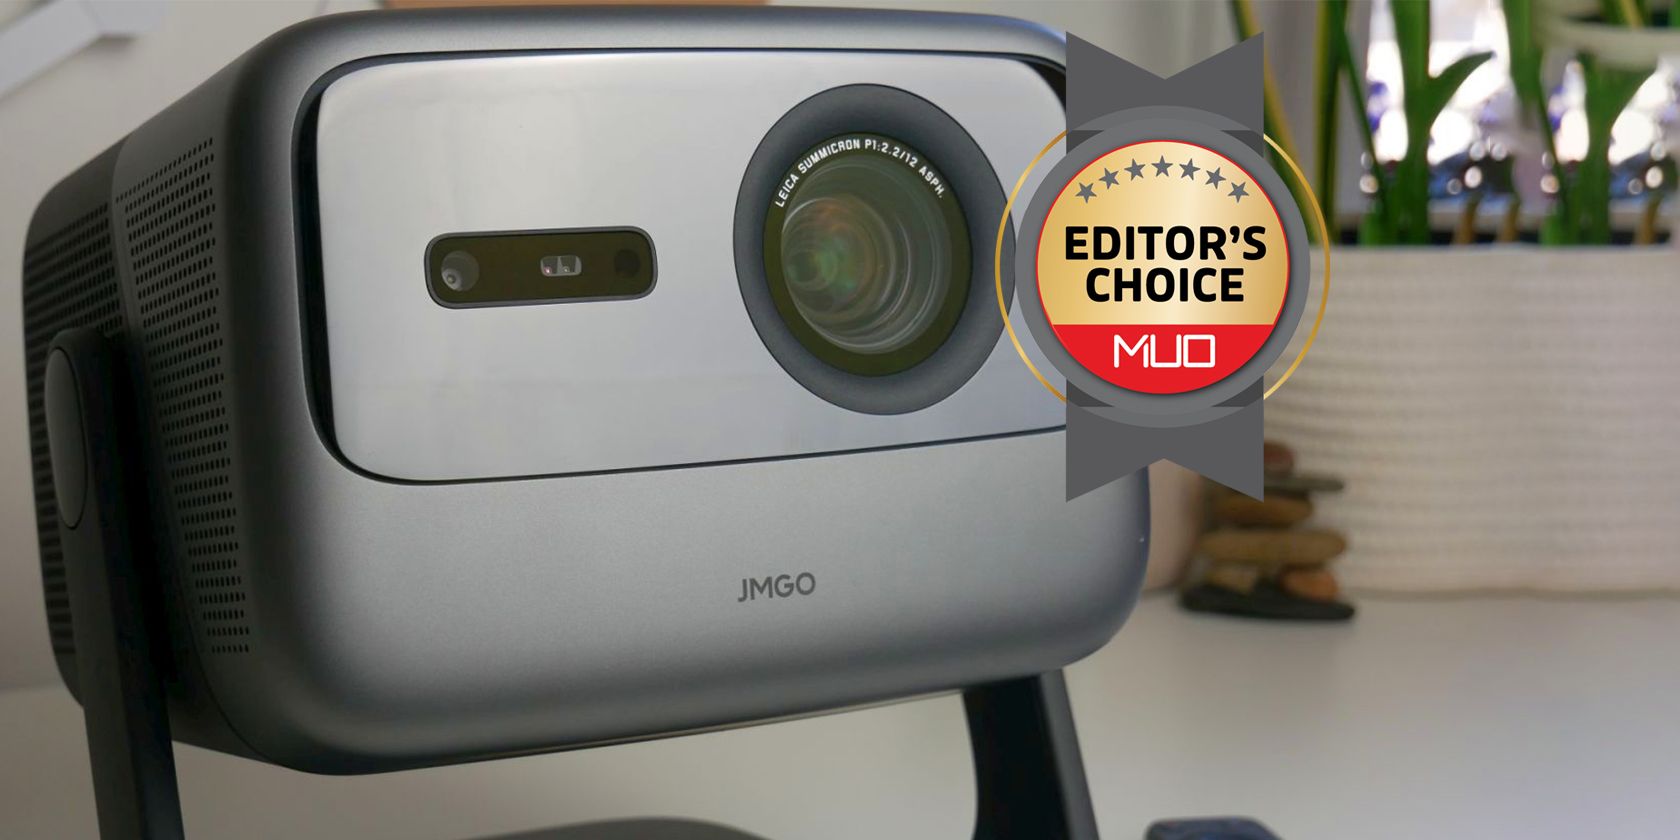 jmgo awarded editors choice